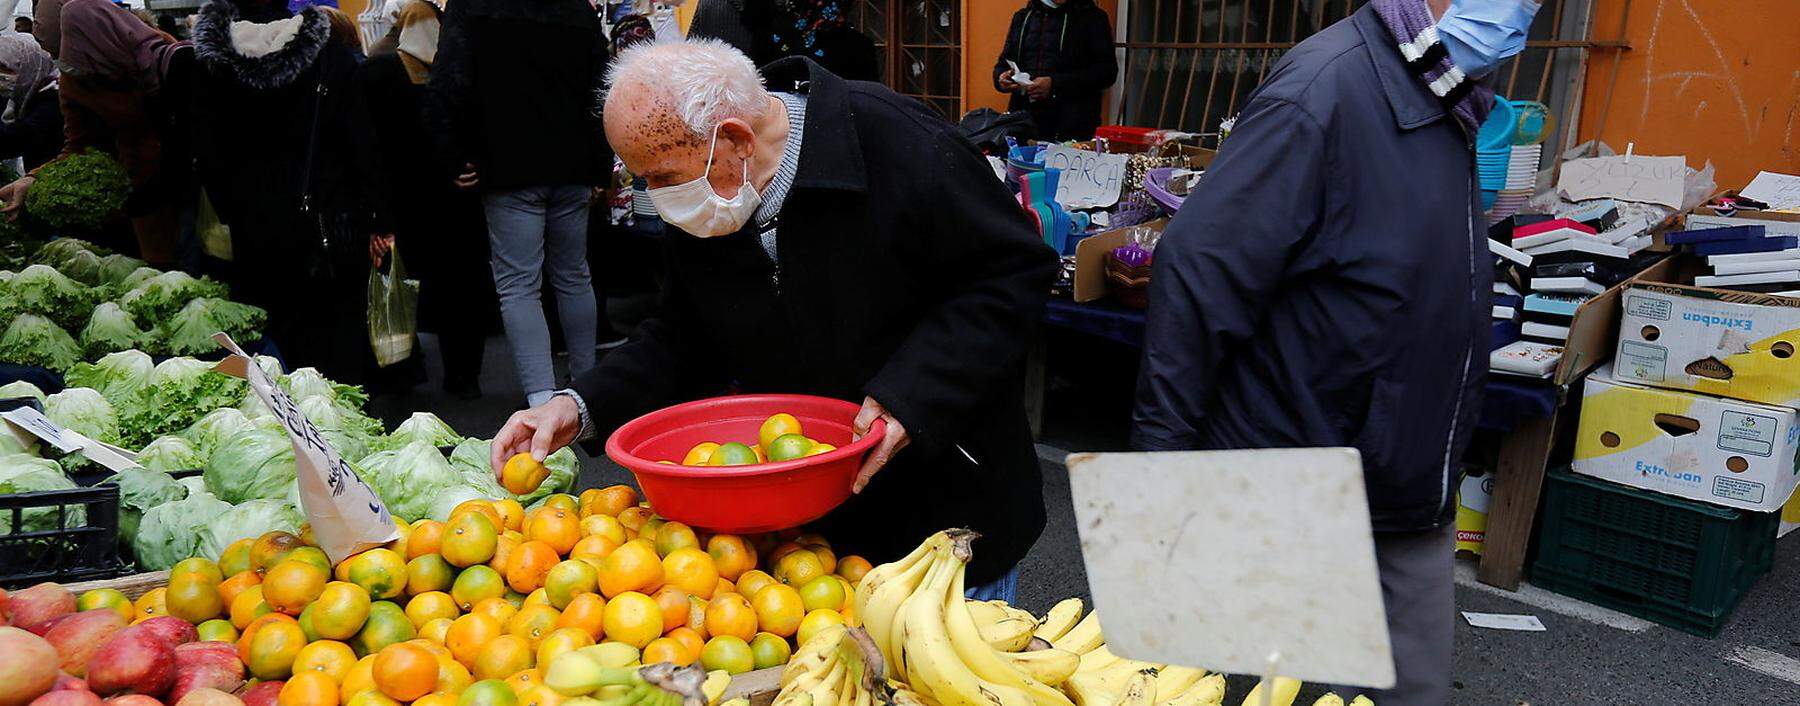 Ein Markt in Istanbul: Die Händler kommen mit den Preisschildern kaum nach.